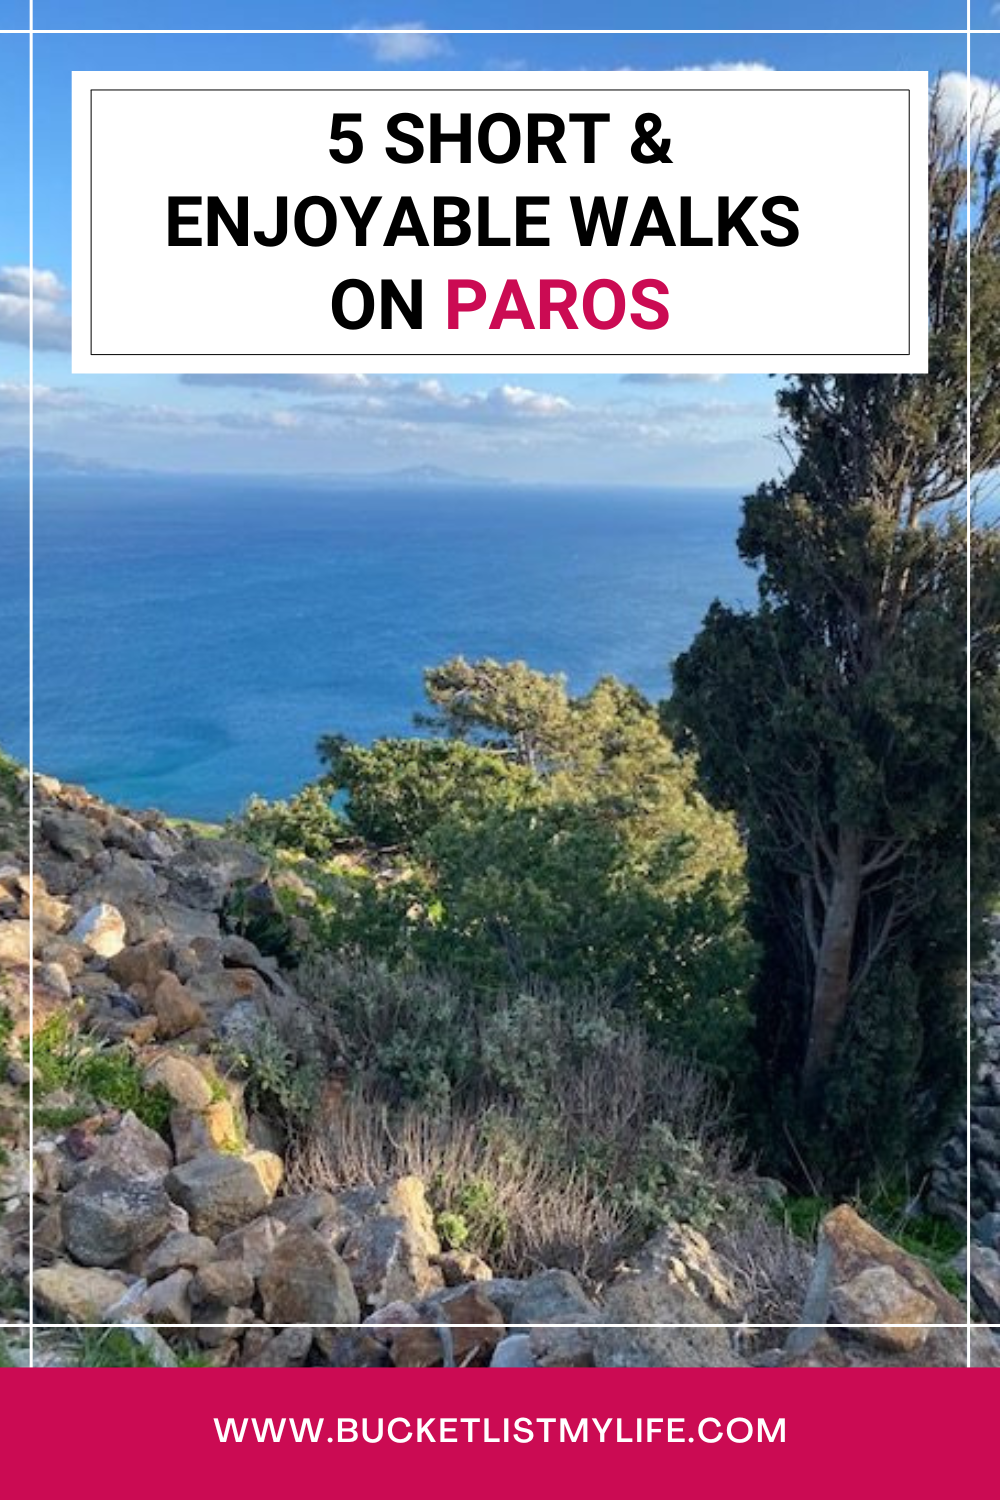 Walking in Paros: 5 Short & Enjoyable Walks with Great Views